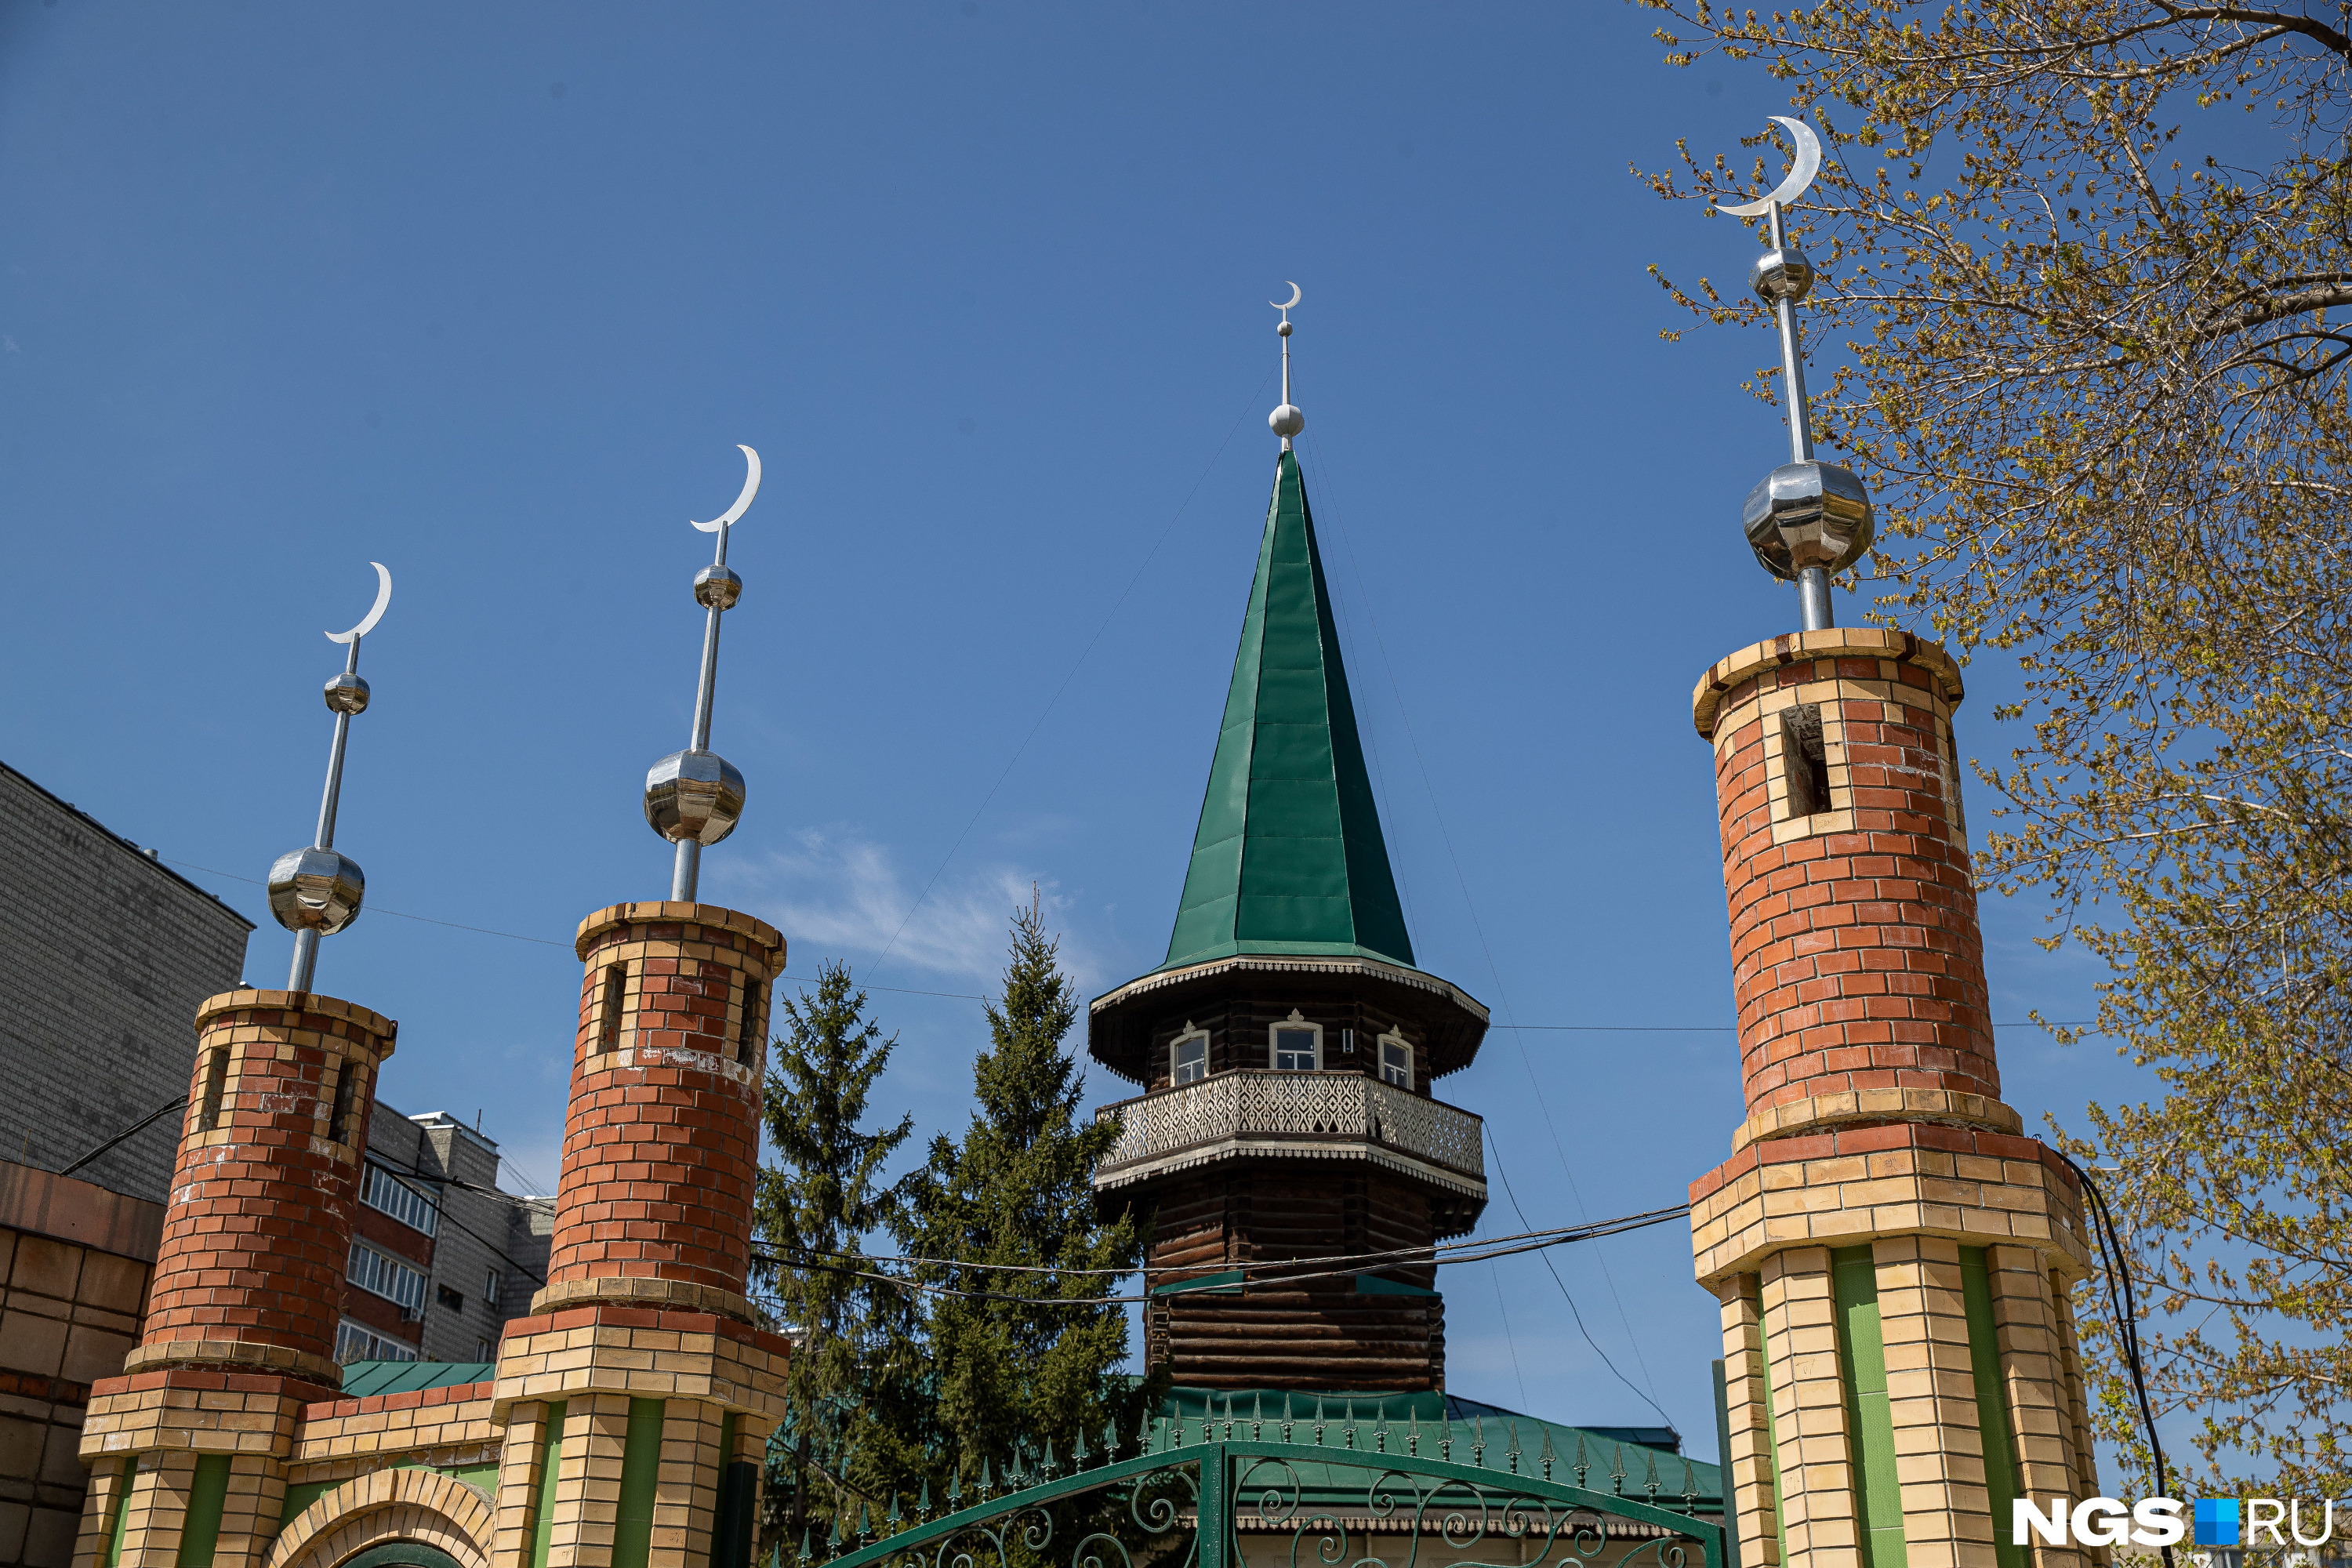 Реконструкция мечети потребовала 14 миллионов рублей и 5 лет работы